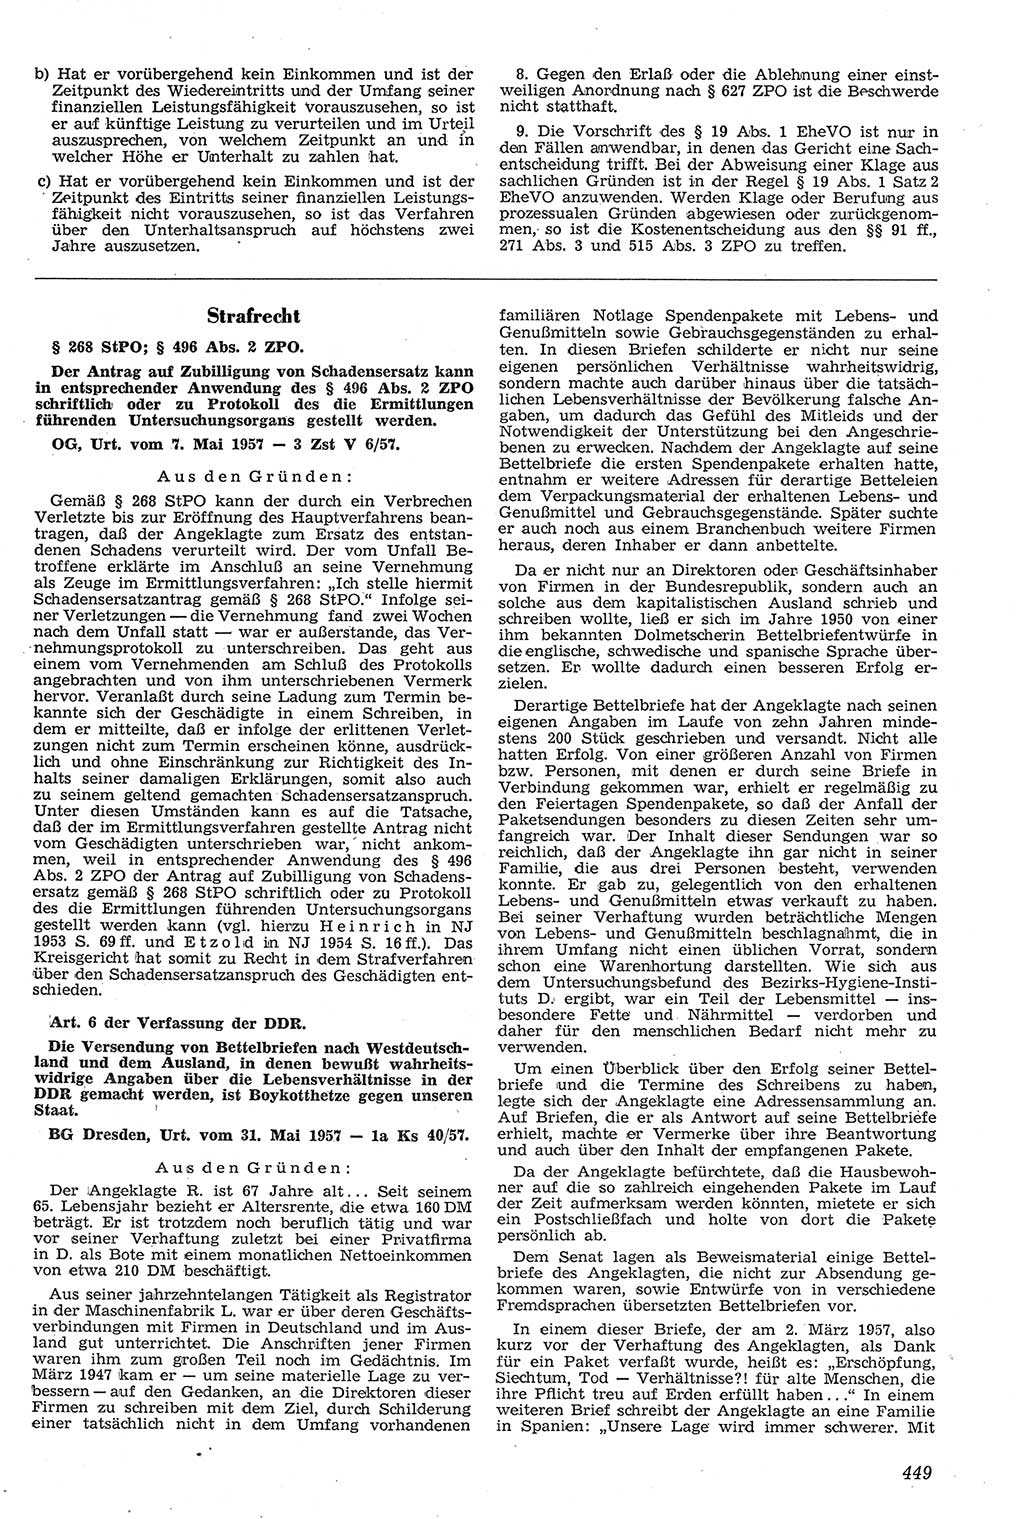 Neue Justiz (NJ), Zeitschrift für Recht und Rechtswissenschaft [Deutsche Demokratische Republik (DDR)], 11. Jahrgang 1957, Seite 449 (NJ DDR 1957, S. 449)